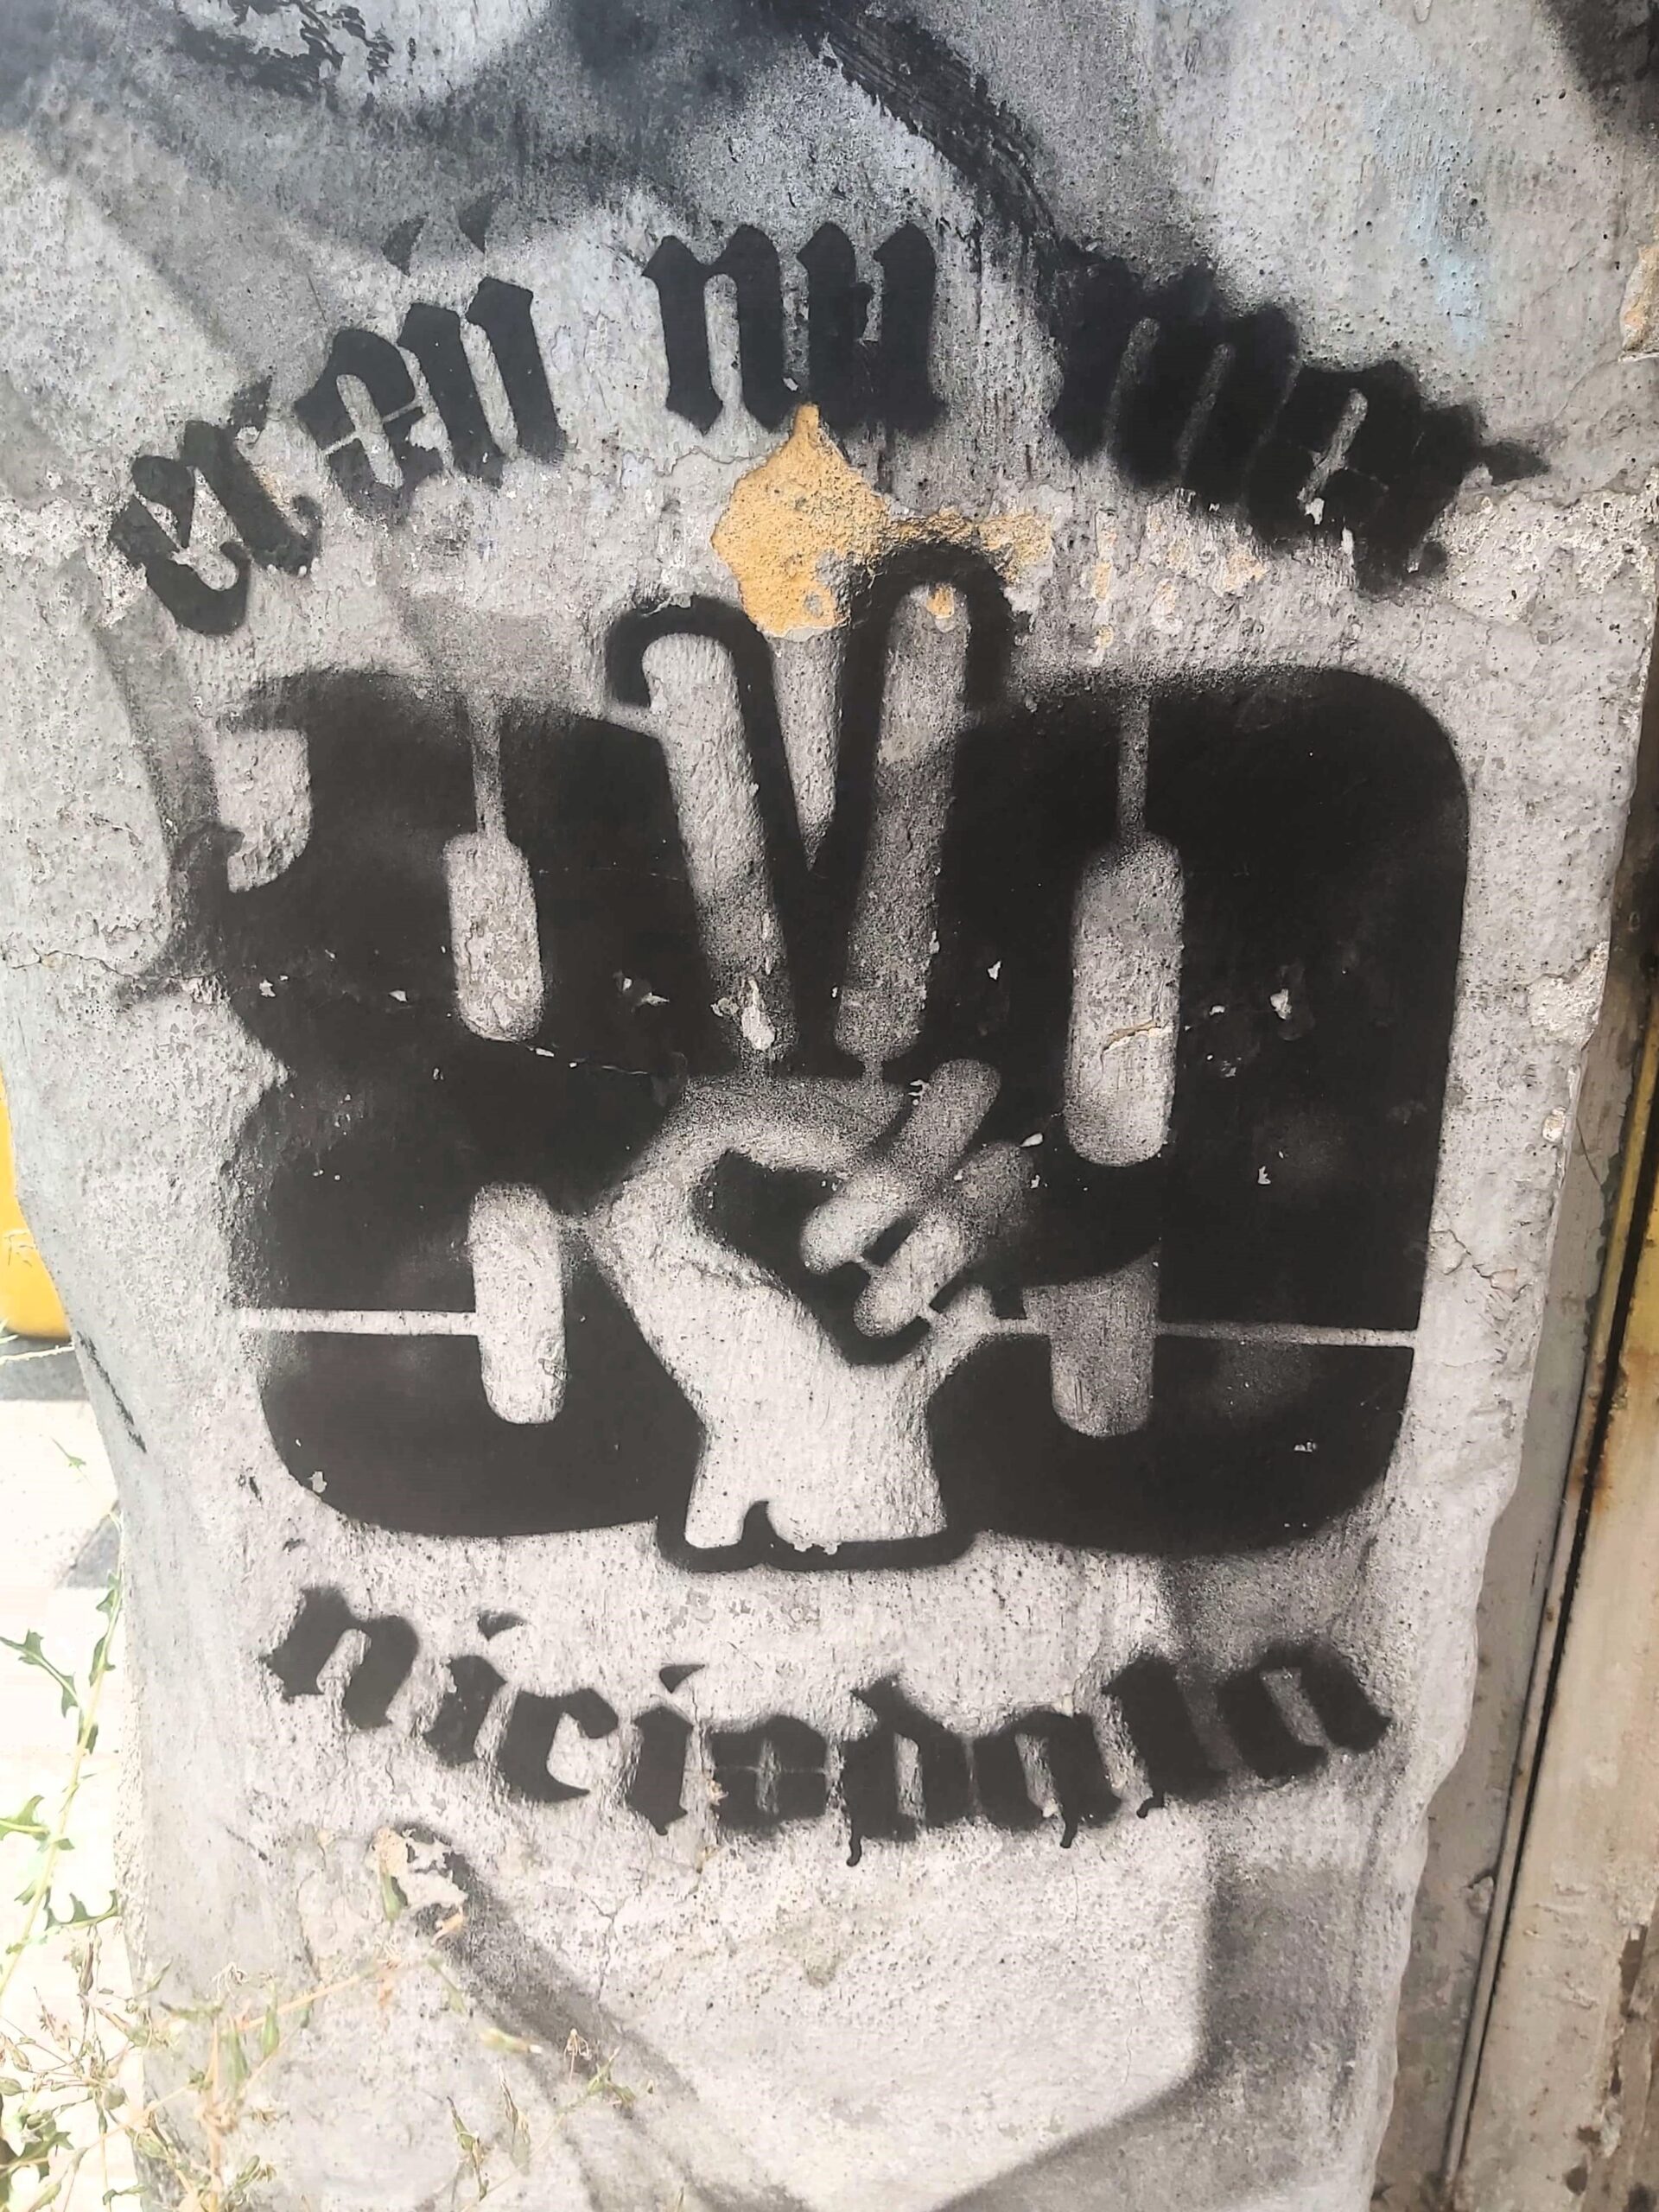 Graffiti in Timisoara, Romania